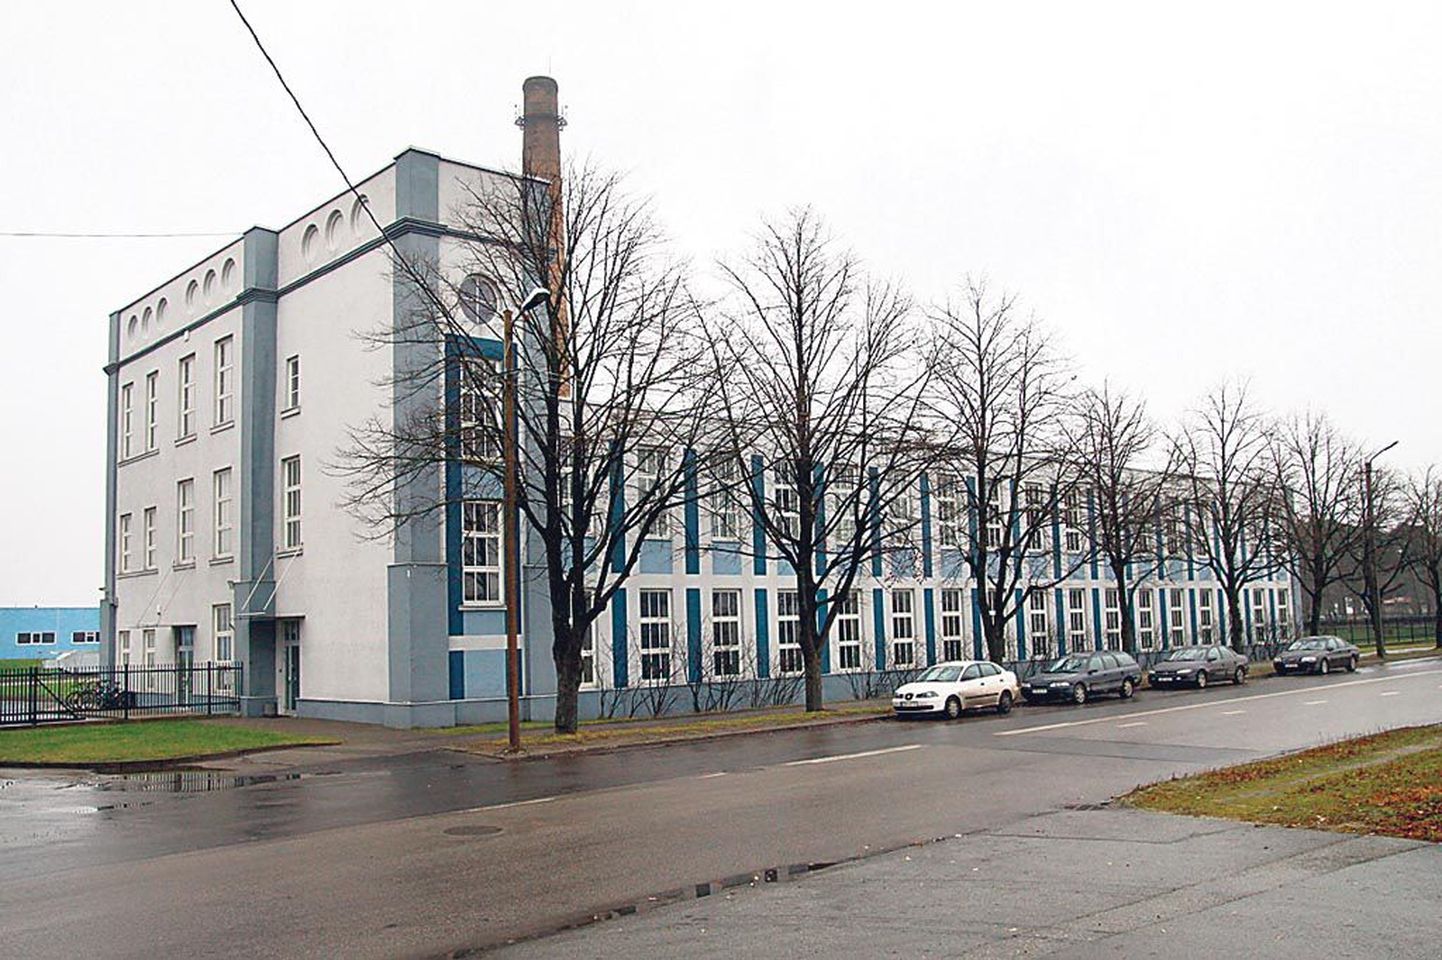 Pärnu ajaloolisest linatööstusest on praeguseks alles suur vabrikukorsten ja pisut teiseilmeline kunagine tootmishoone. Pärnakatele leiba andnud linatöötlemine on ajalugu.